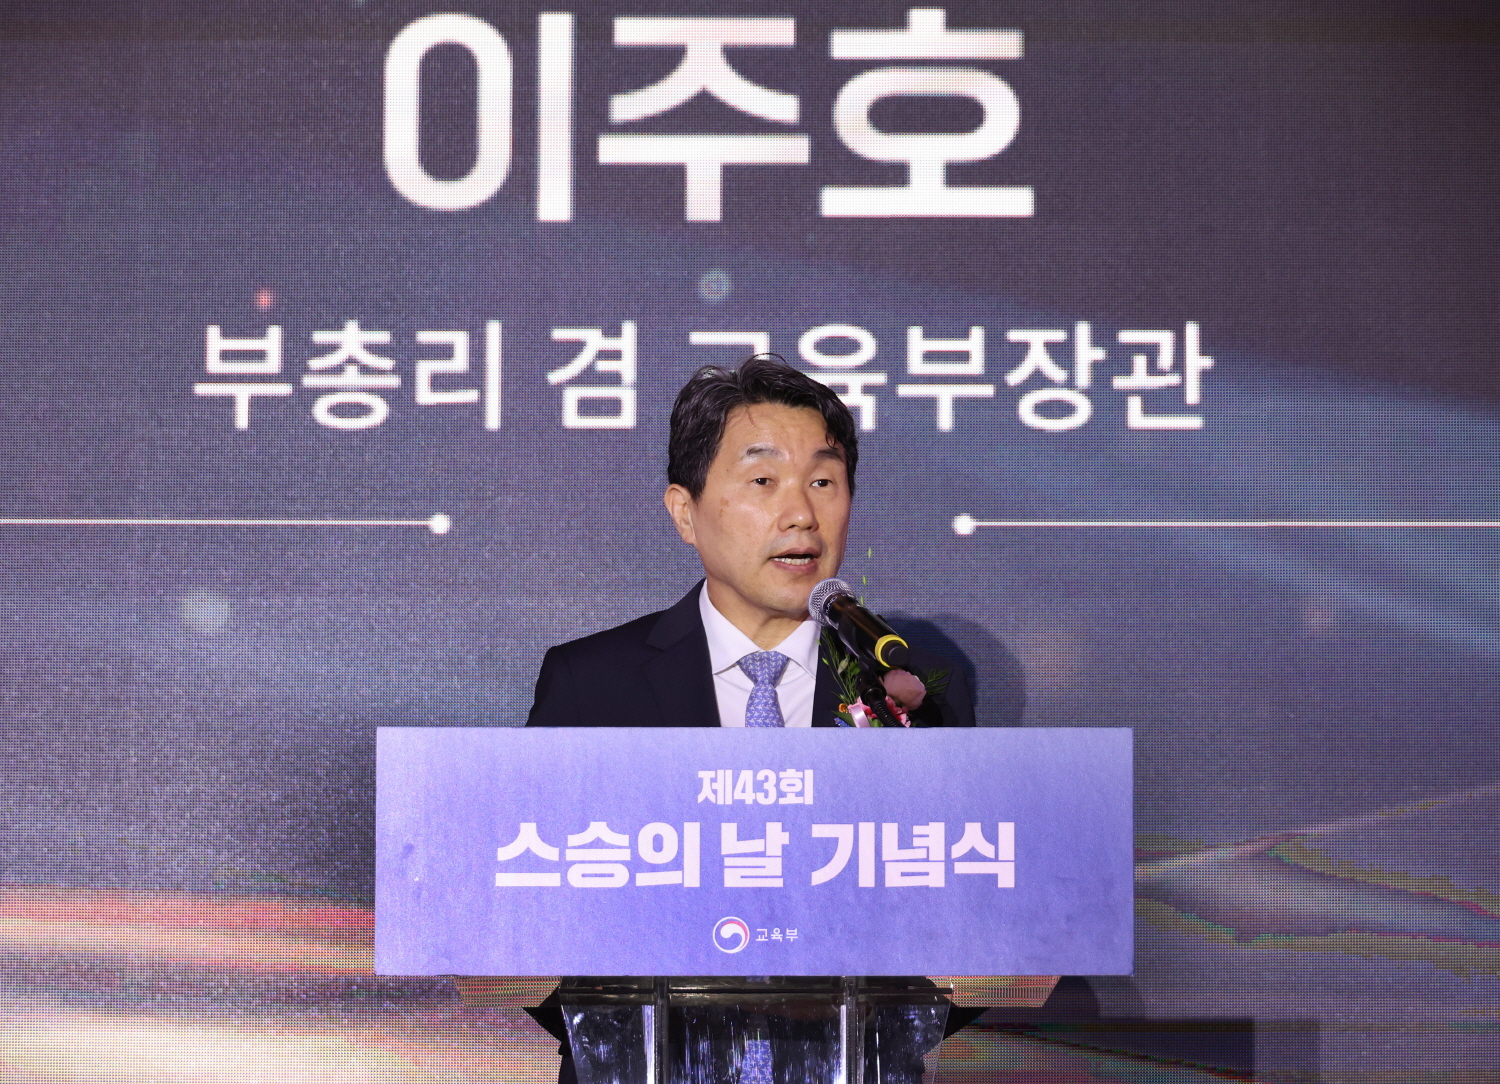 이주호 부총리 겸 교육부장관은 5월 14일(화), 서울 더케이호텔에서 제43회 스승의 날 기념식을 개최했다.